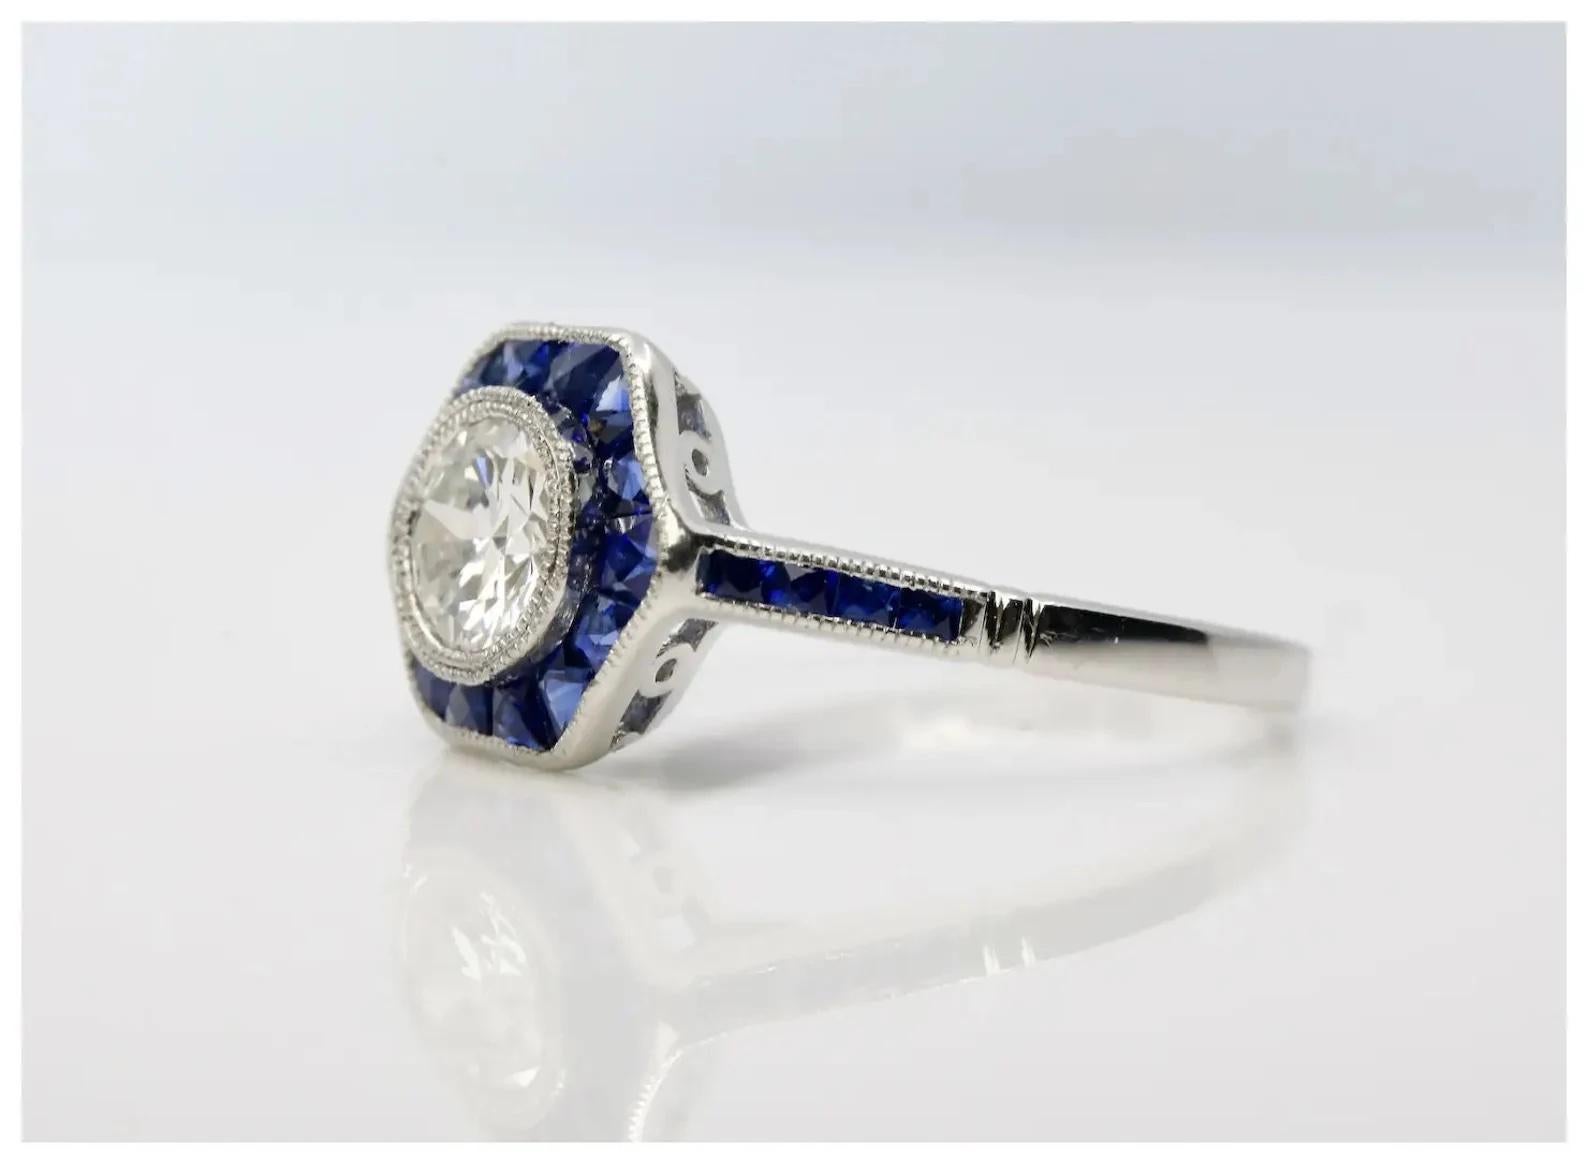 Ein schöner Ring aus Platin mit Diamanten im Art-Deco-Stil und Saphiren im französischen Schliff.

In der Mitte befindet sich ein alt-europäisch geschliffener Diamant von 0,75 Karat mit der Farbe H und der Reinheit VS2.

Eingerahmt von 22 blauen